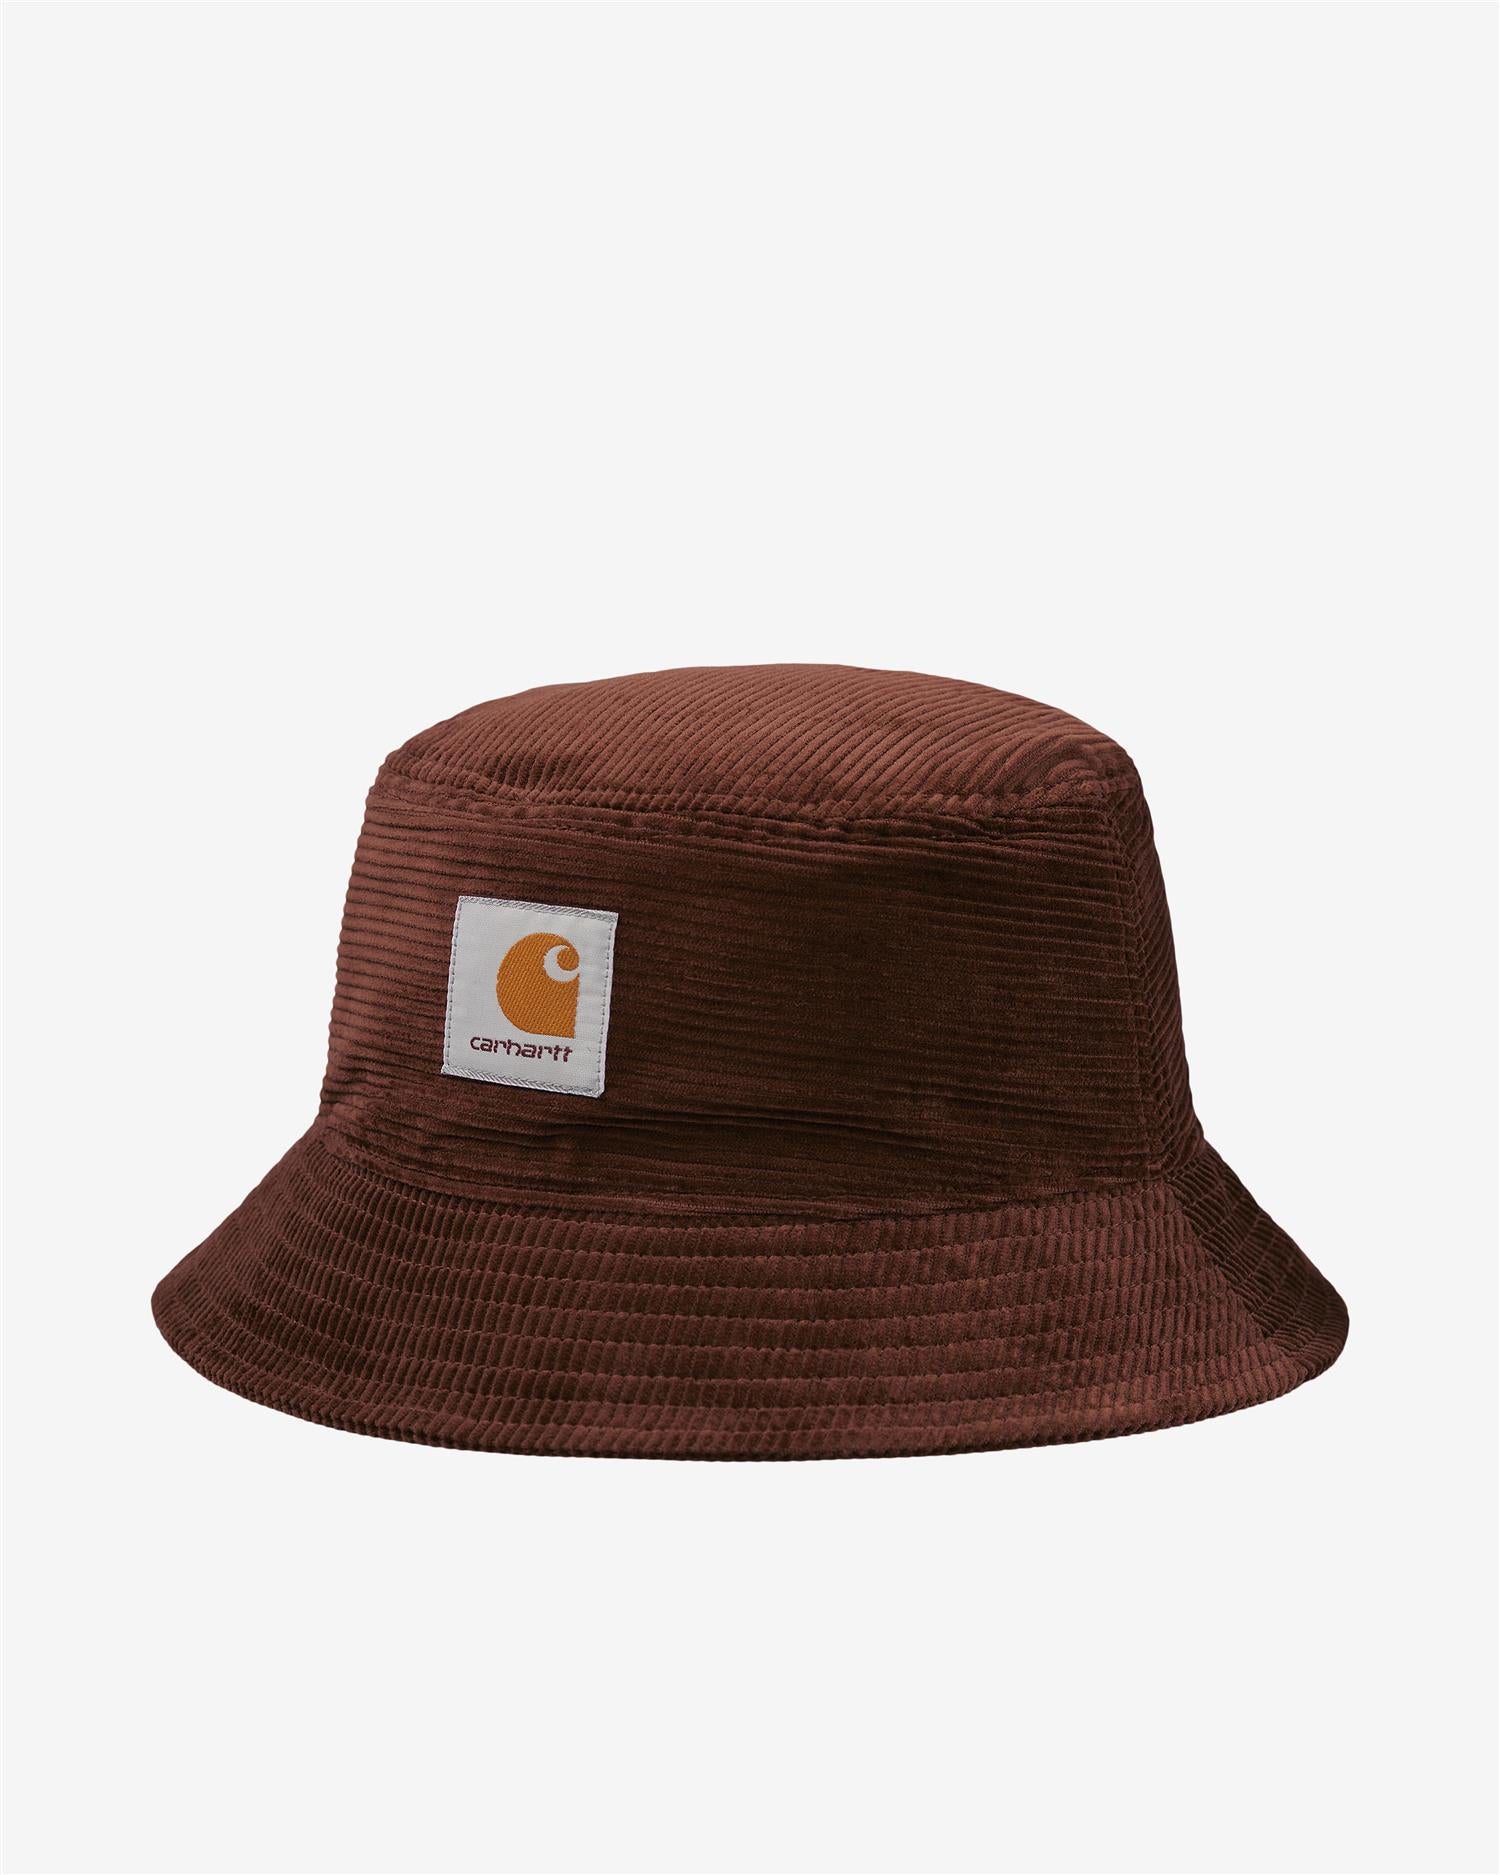 CORD BUCKET HAT - ALE